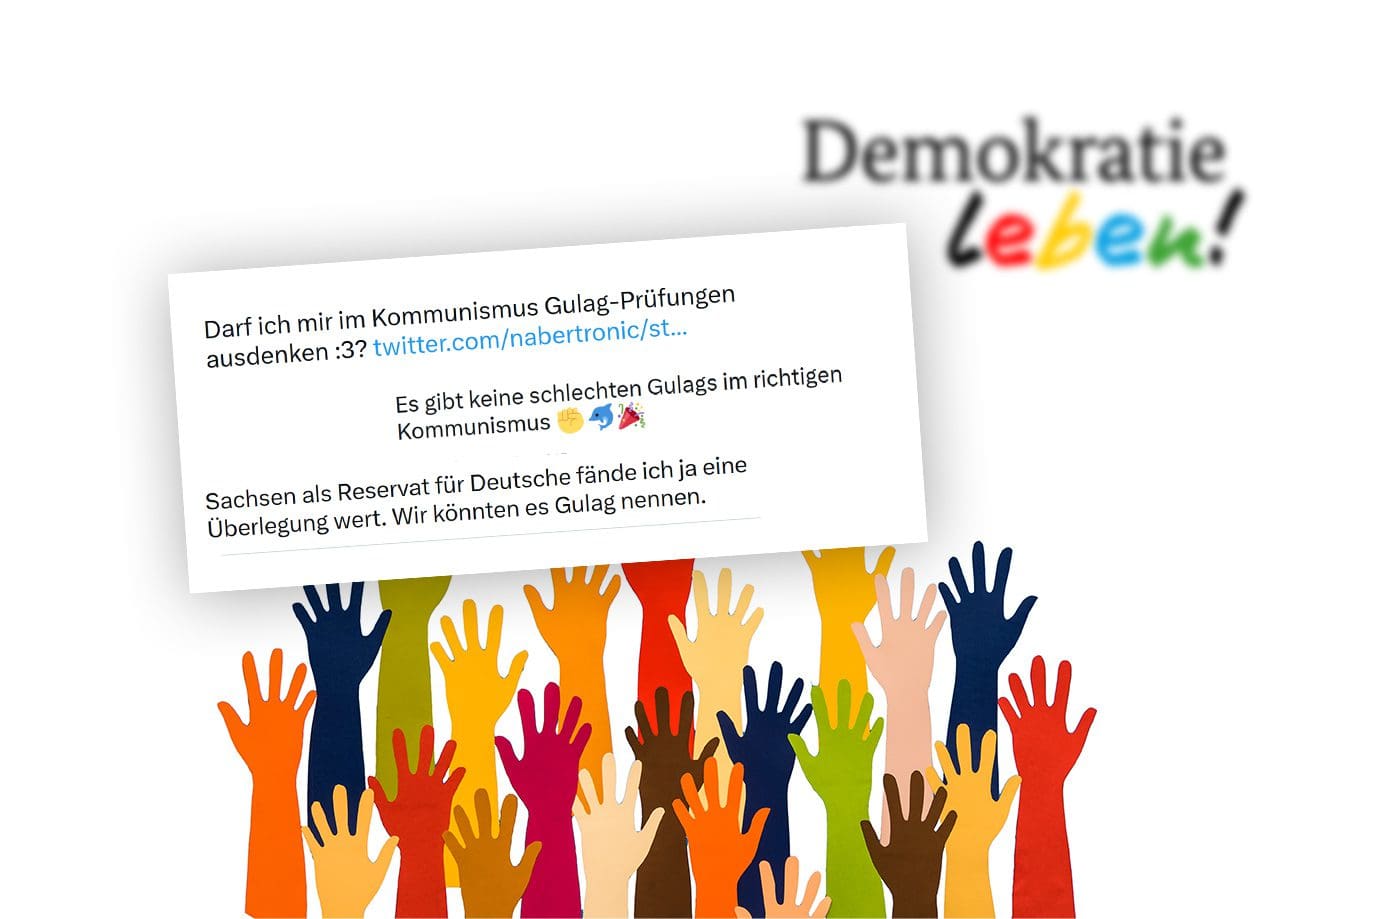 programm-„demokratie-leben!“:-gelder-fuer-gulagphantasien-und-deutschen-hass